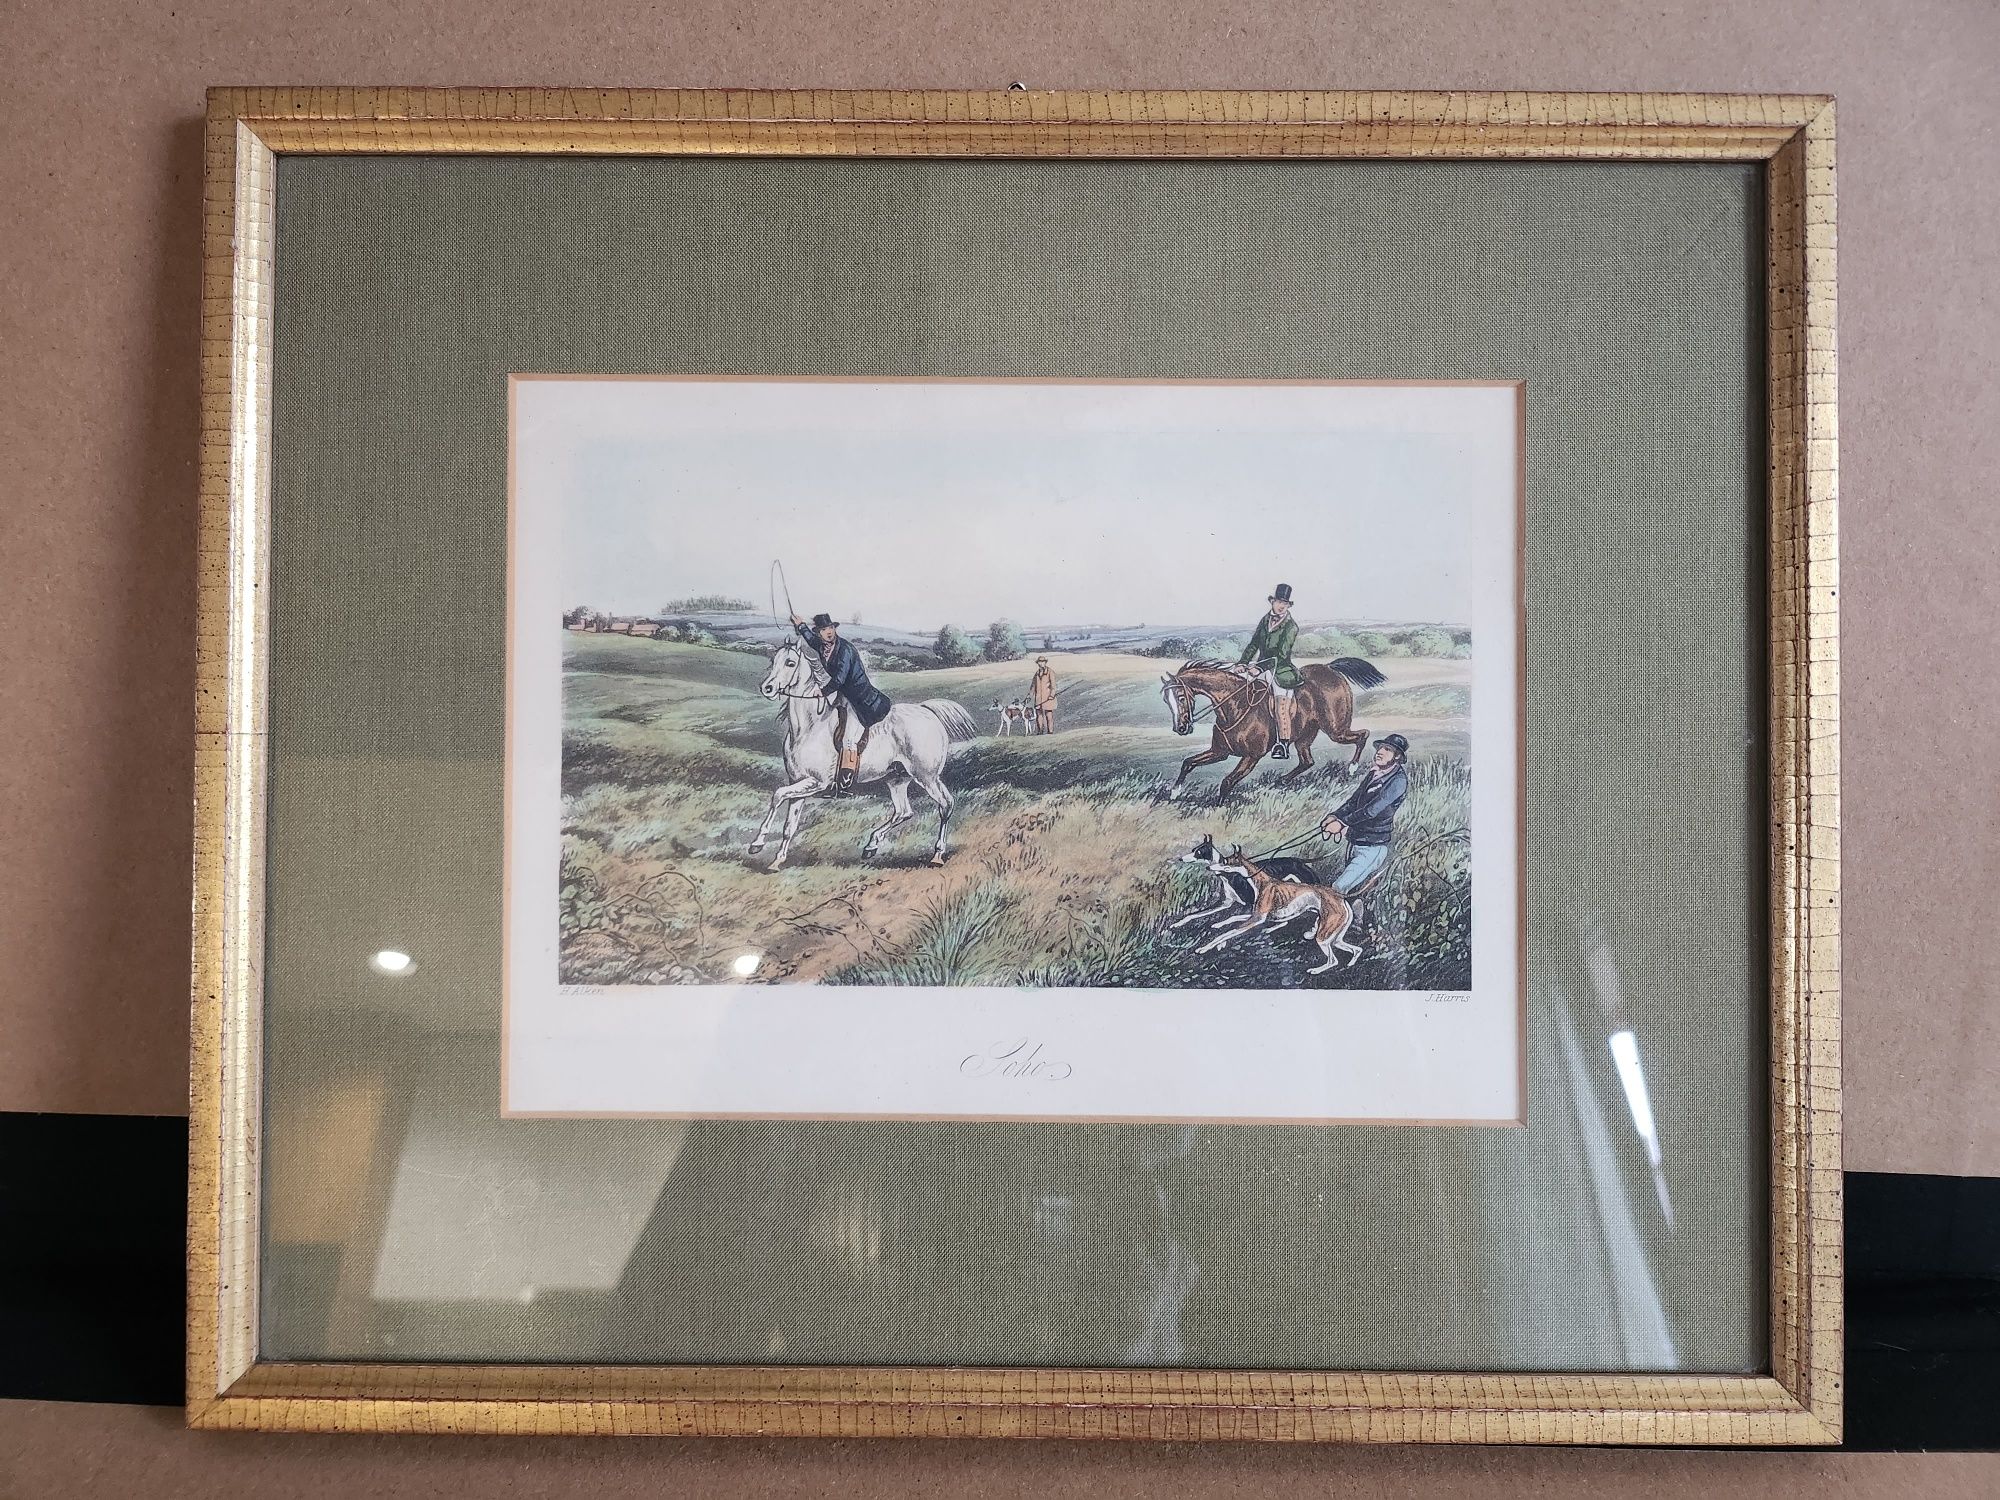 Rysunek obrazek harris ramka rama pozłacana konie polowanie psy harty